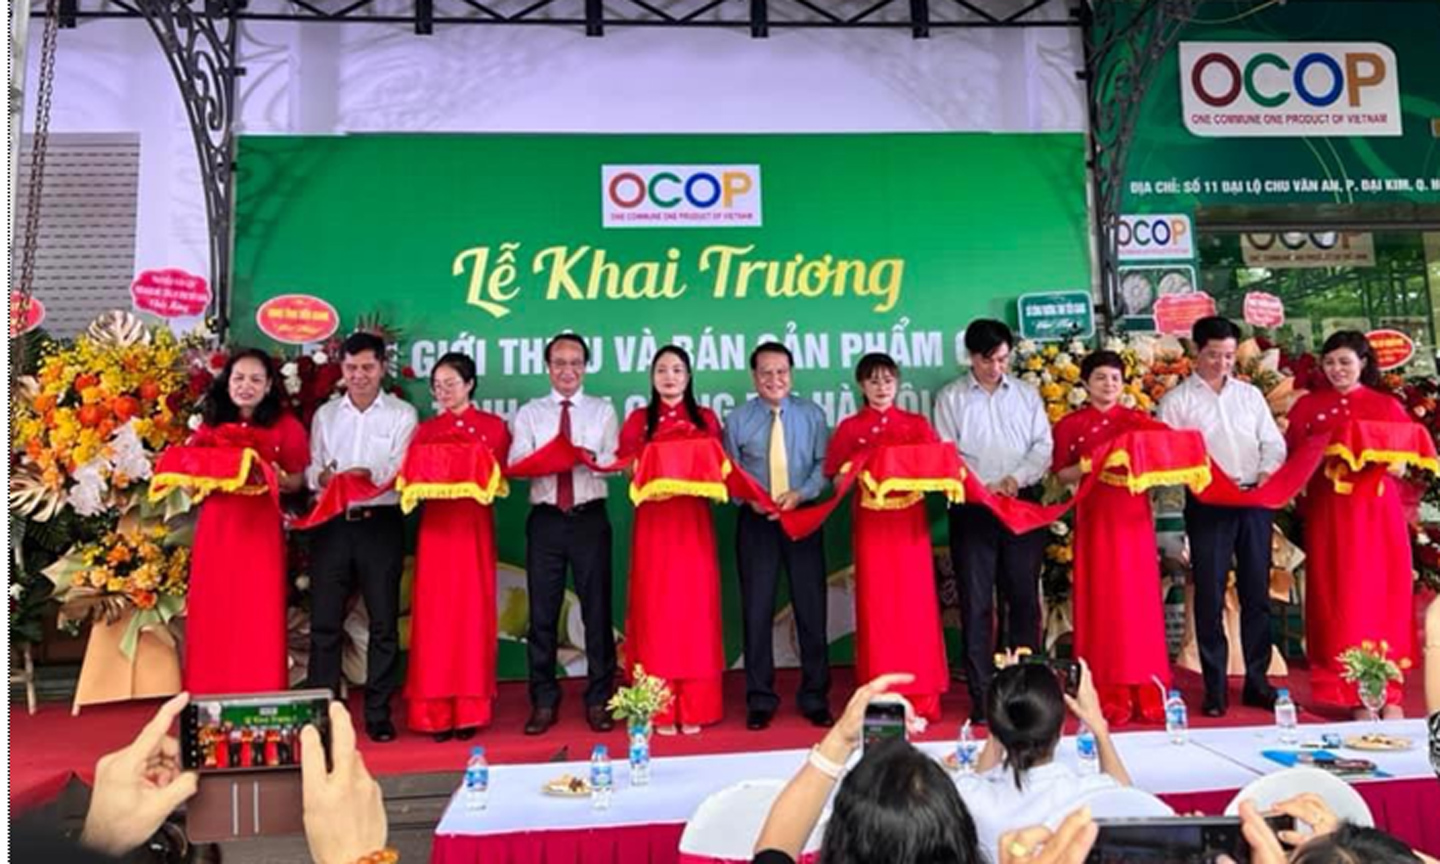 Tiền Giang có Điểm giới thiệu và bán sản phẩm OCOP tại Thủ đô Hà Nội